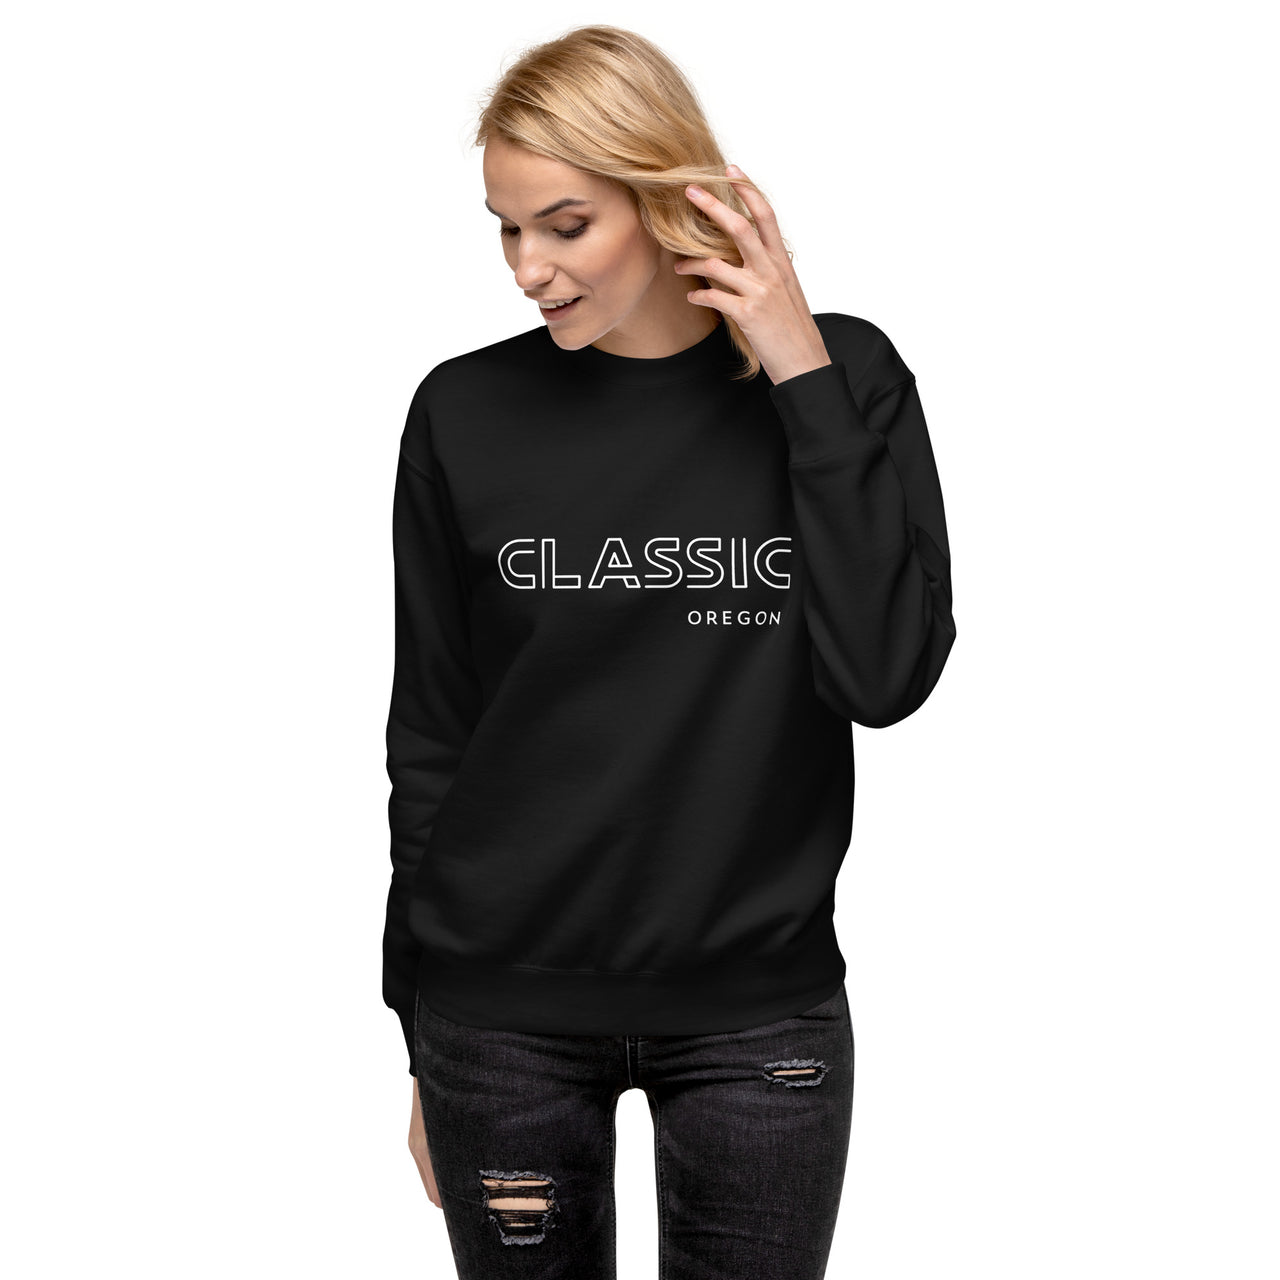 CLASSIC OREGON - Unisex Premium Sweatshirt